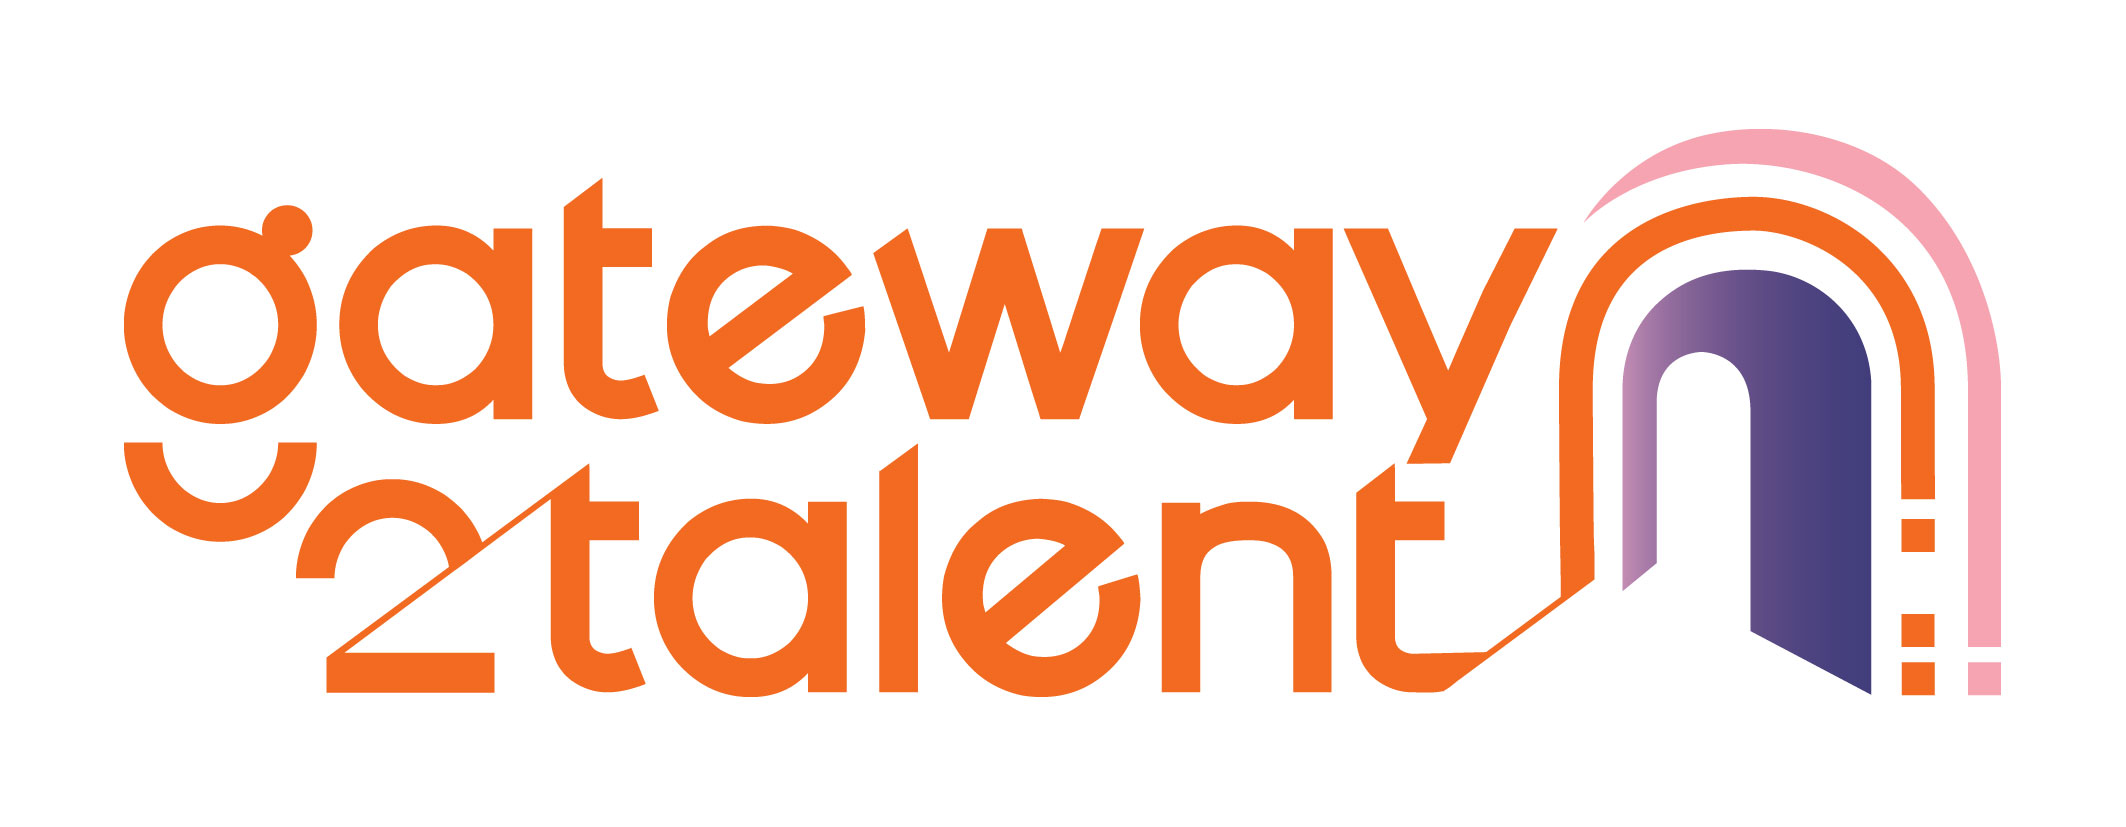 Gateway_logo_colour-2;